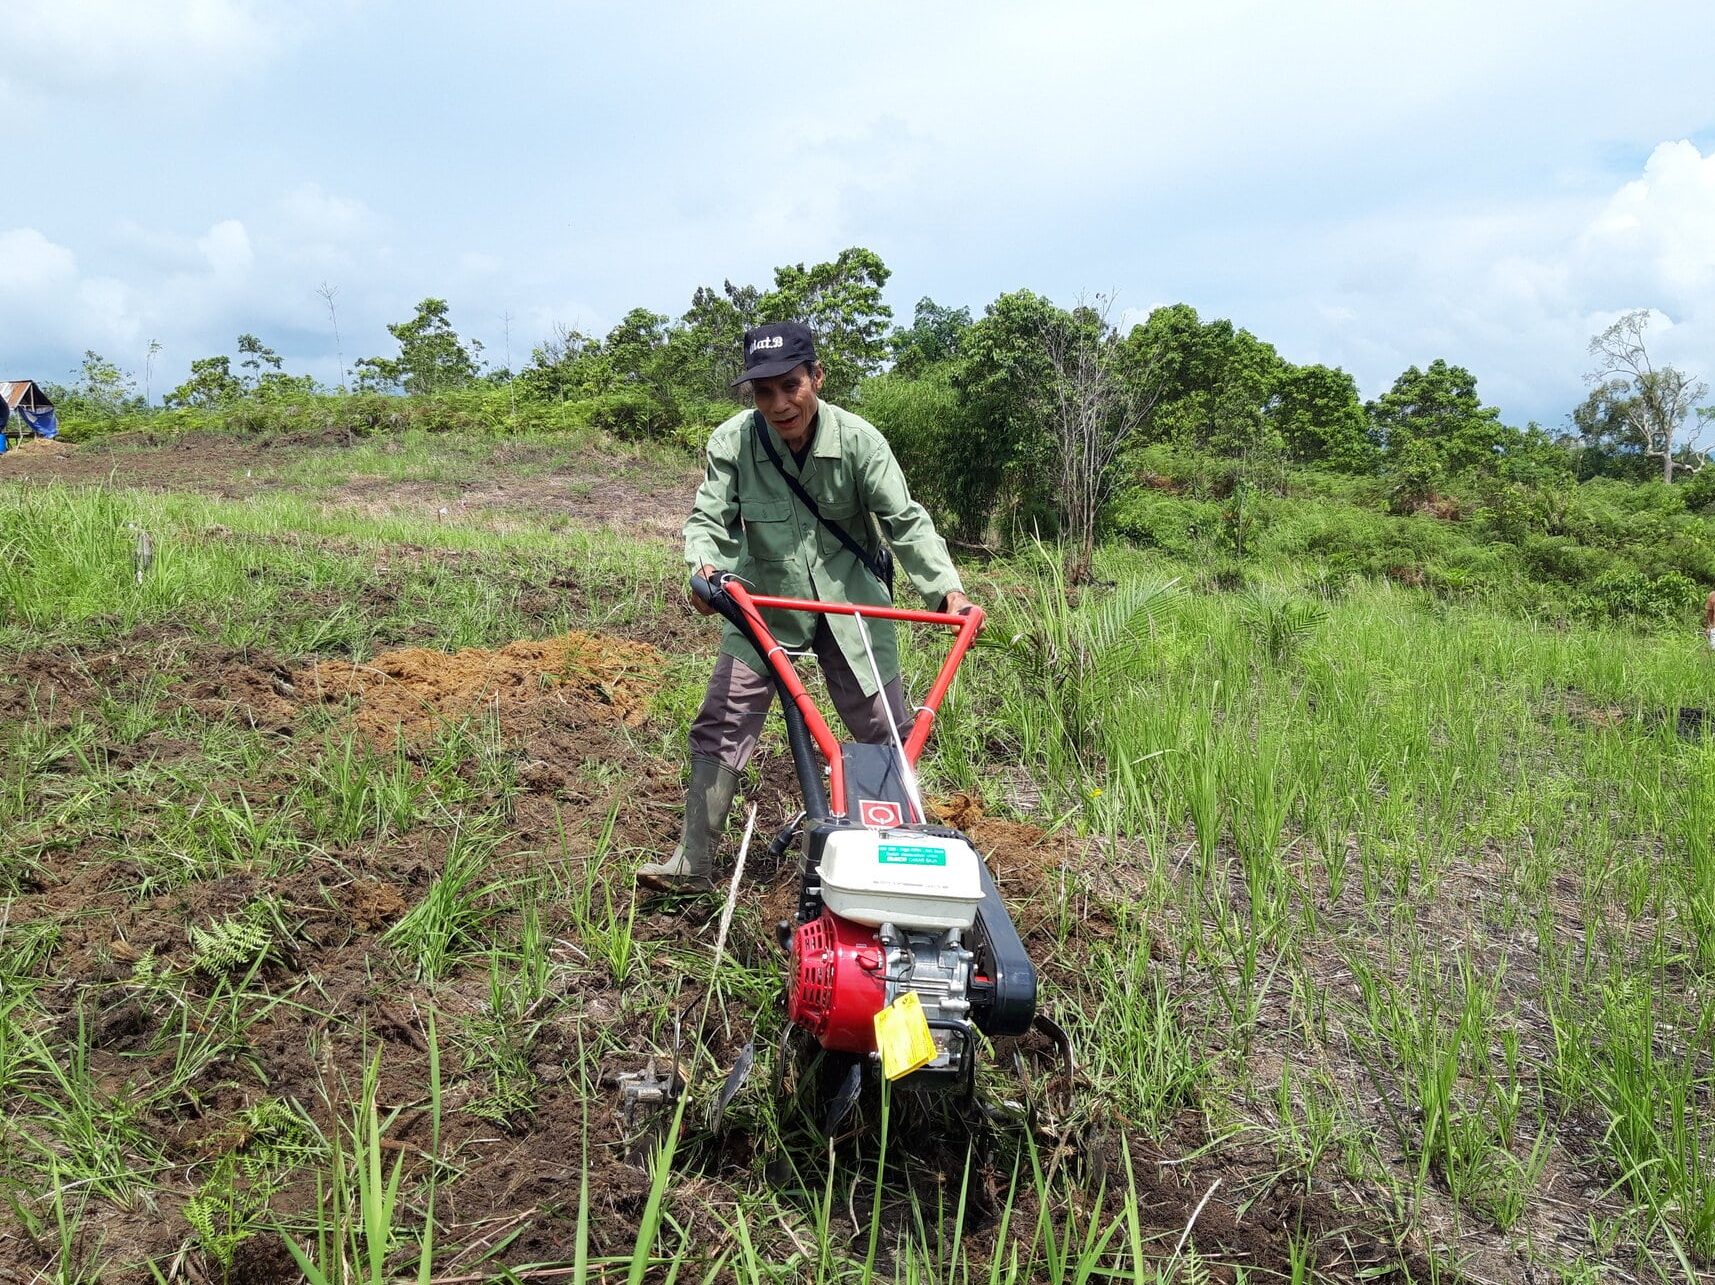 Bantuan Handtractor Dukung Pertanian Organik Berkelanjutan di Melawi